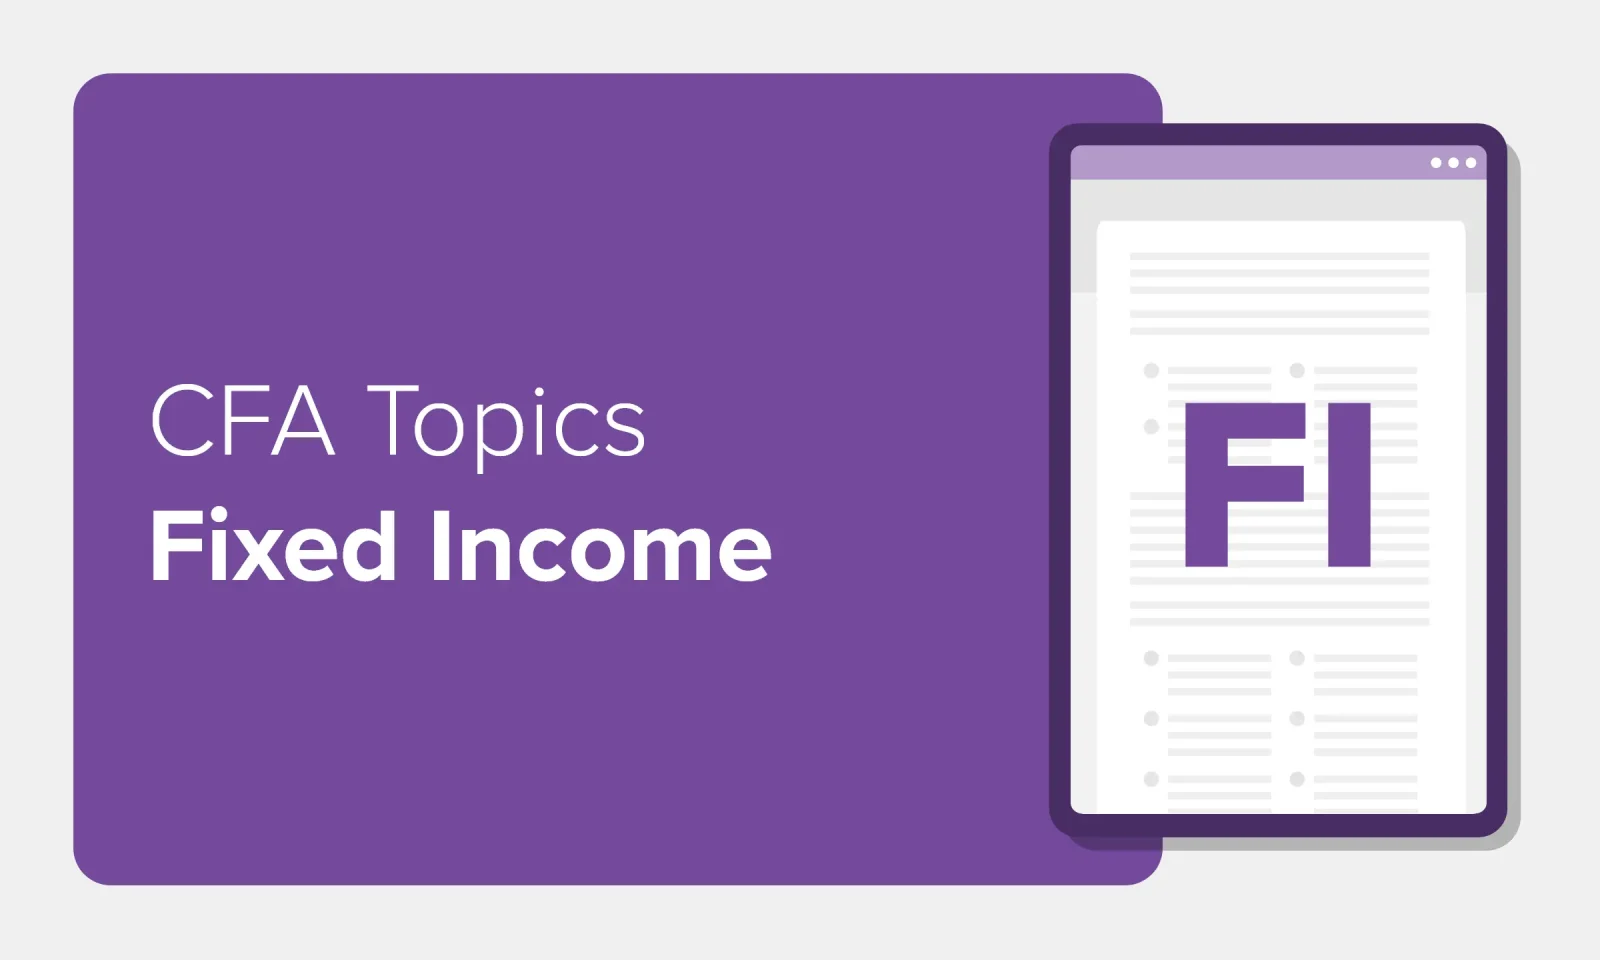 CFA Topics Fixed Income